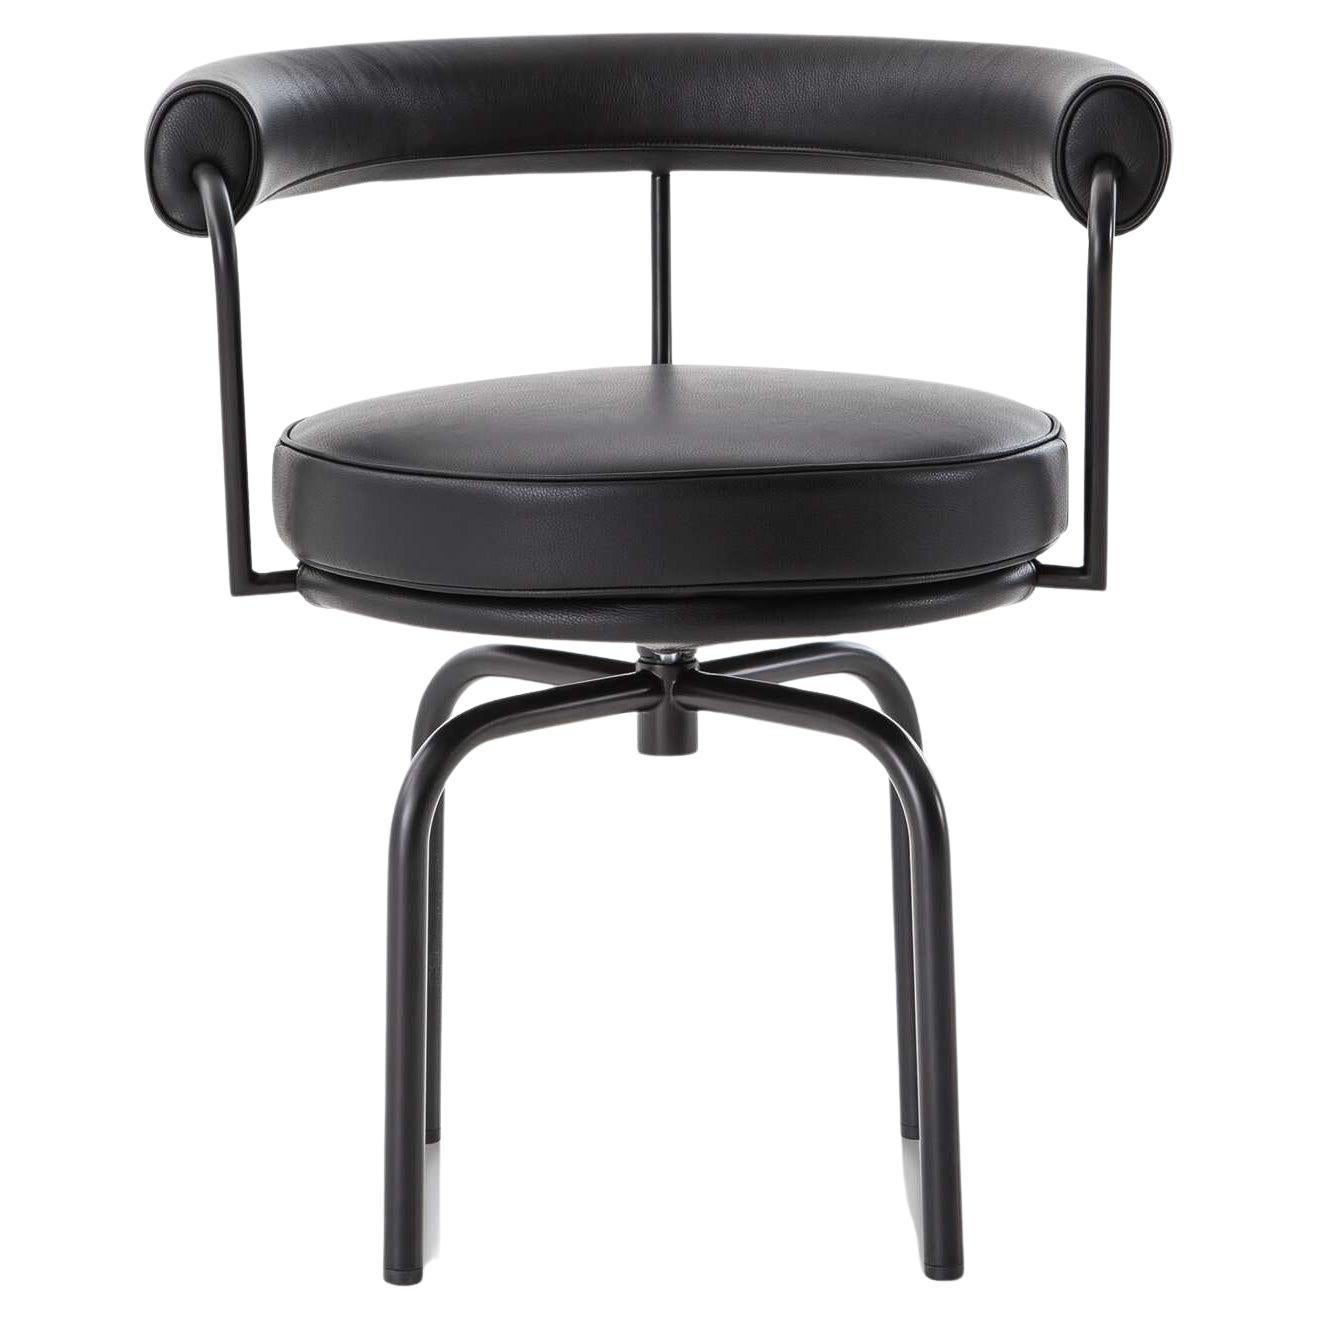 Ledergepolsterter Stuhl LC7, entworfen von Charlotte Perriand im Jahr 1927. Neu aufgelegt im Jahr 1978.
Hergestellt von Cassina in Italien.

Entworfen von Charlotte Perriand und Teil der Kollektion LC von Le Corbusier, Pierre Jeanneret und Charlotte